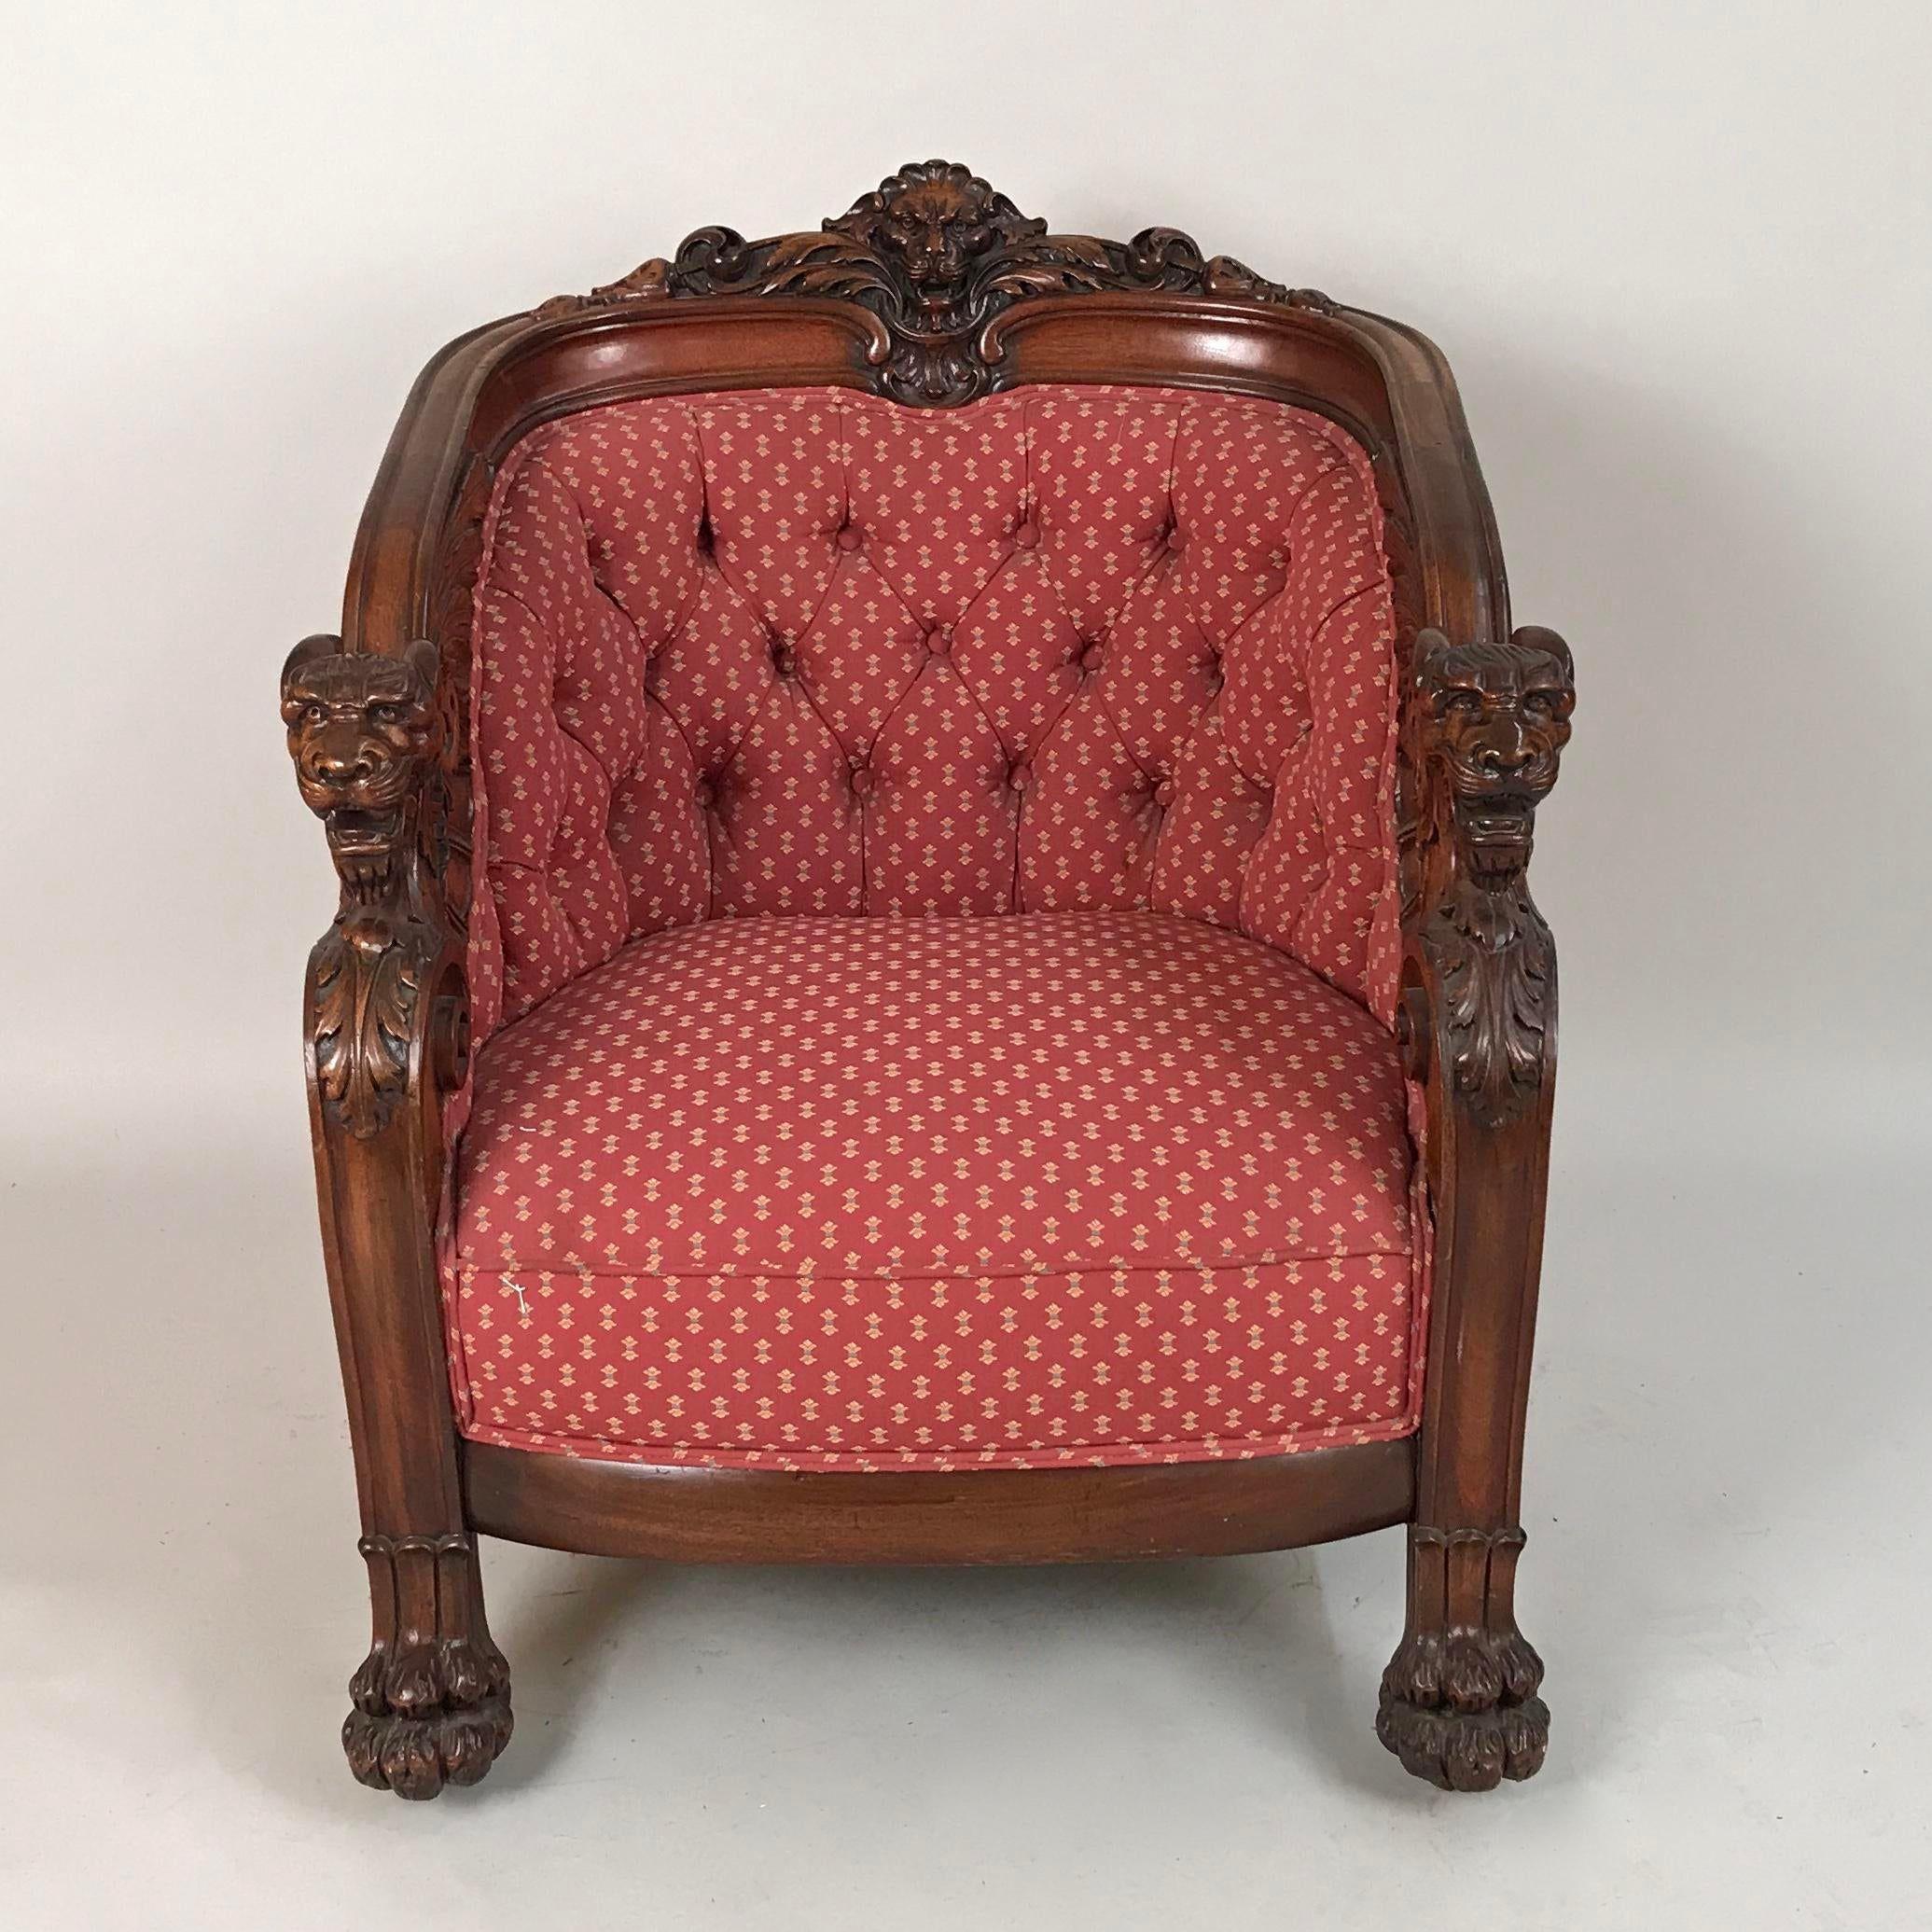 e fauteuil Regency en acajou de la manière de George Smith (né en 1786), datant du début du 19e siècle. George Smith était un célèbre créateur de meubles pendant la période de la Régence. Ses designs et son savoir-faire exceptionnel influencent